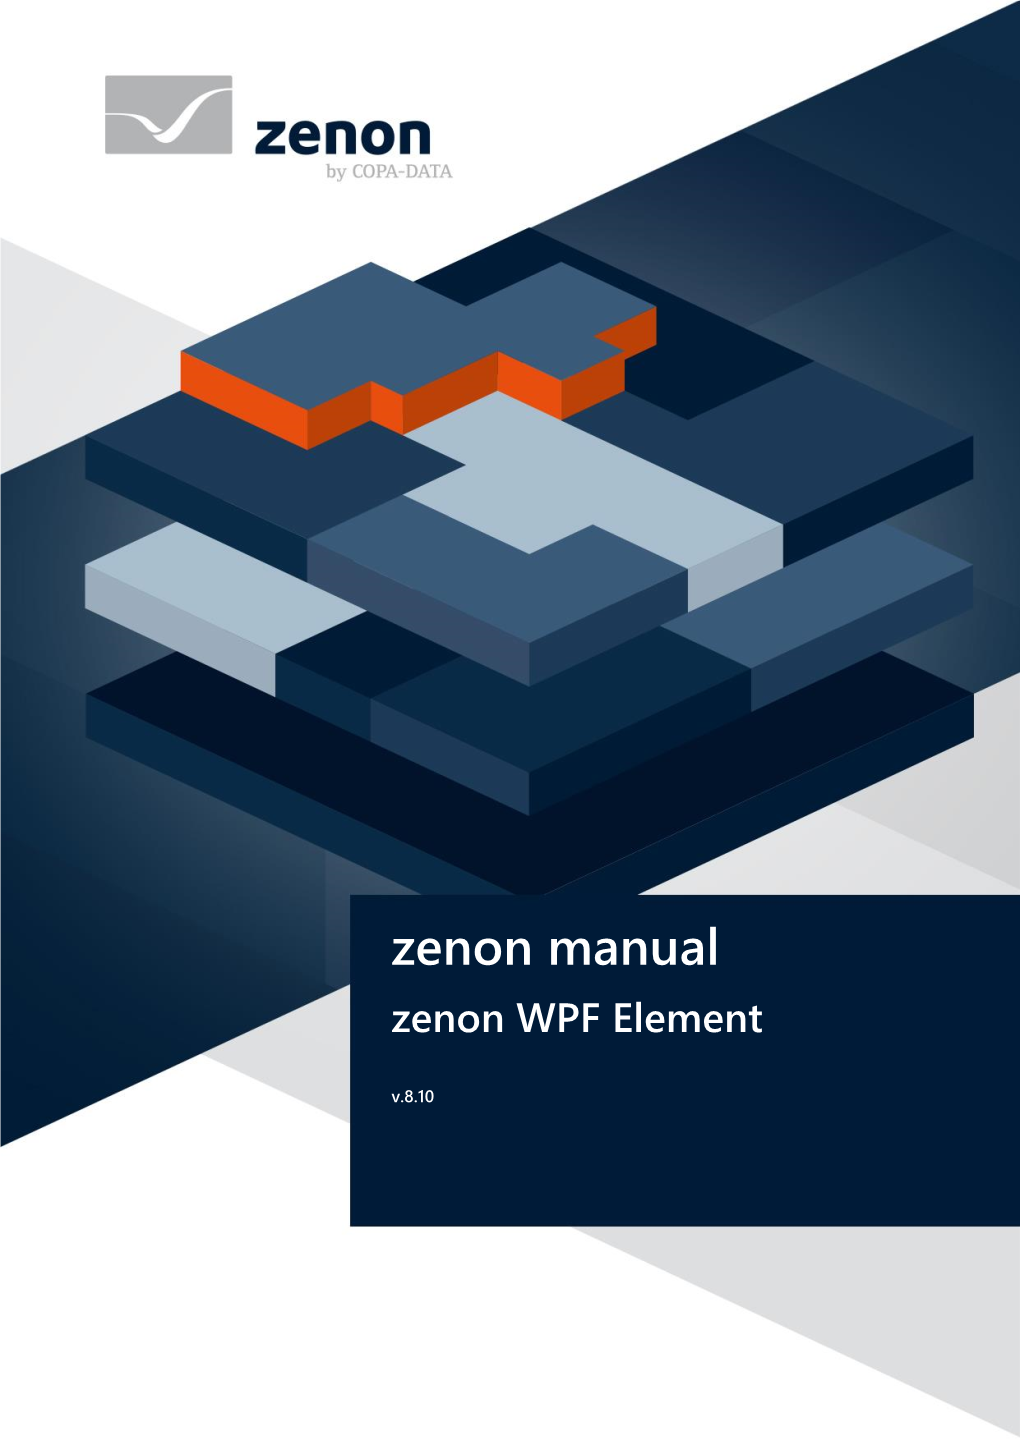 Zenon WPF Element V.8.10